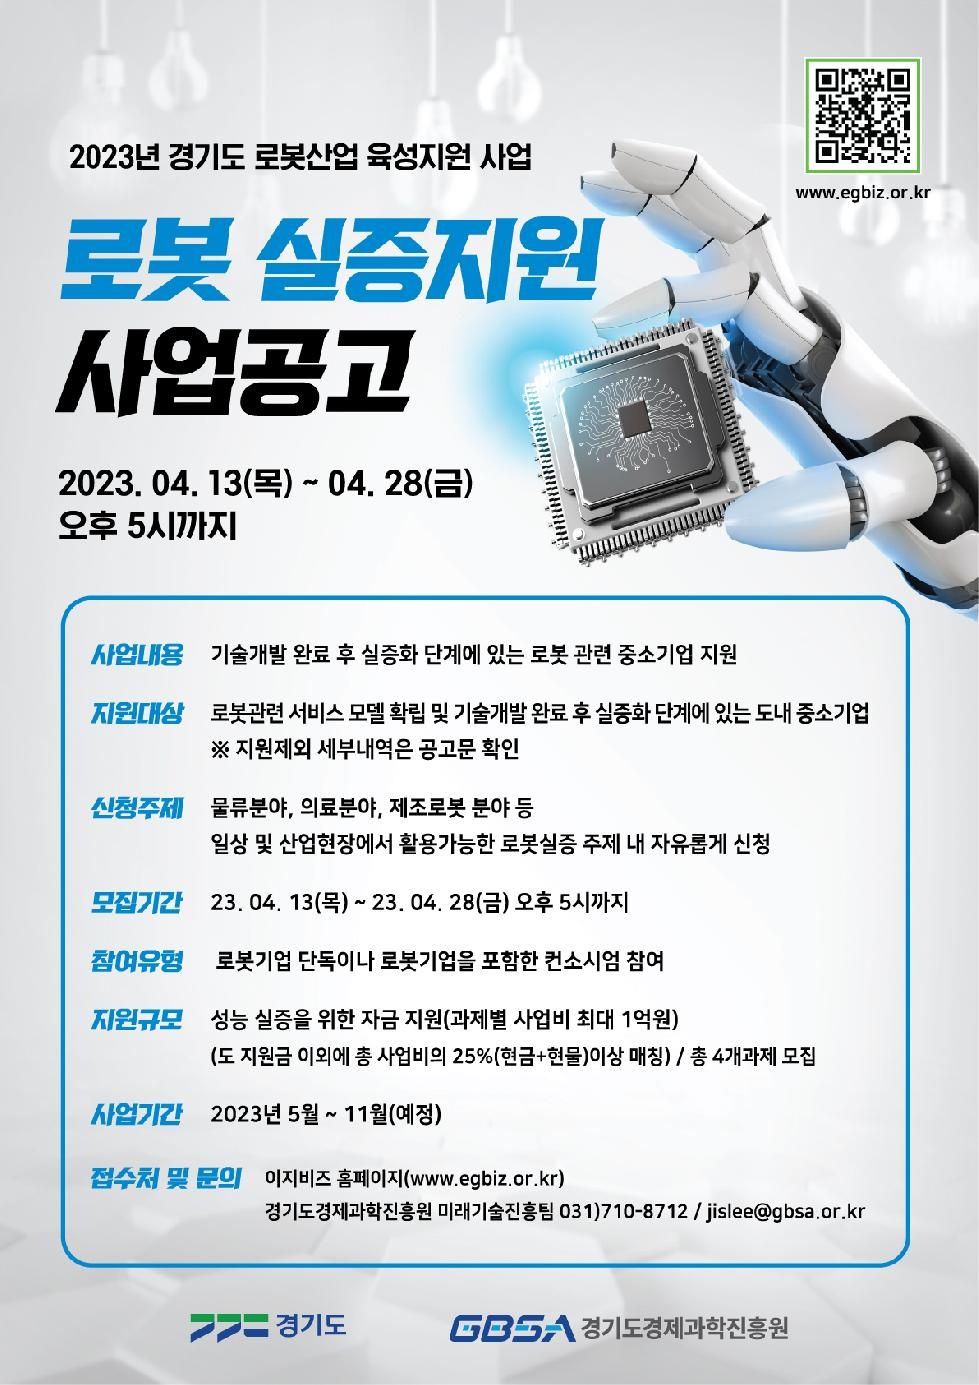 경기도, 로봇 실증 지원 사업 참여 기업 모집. 최대 1억 원 지원